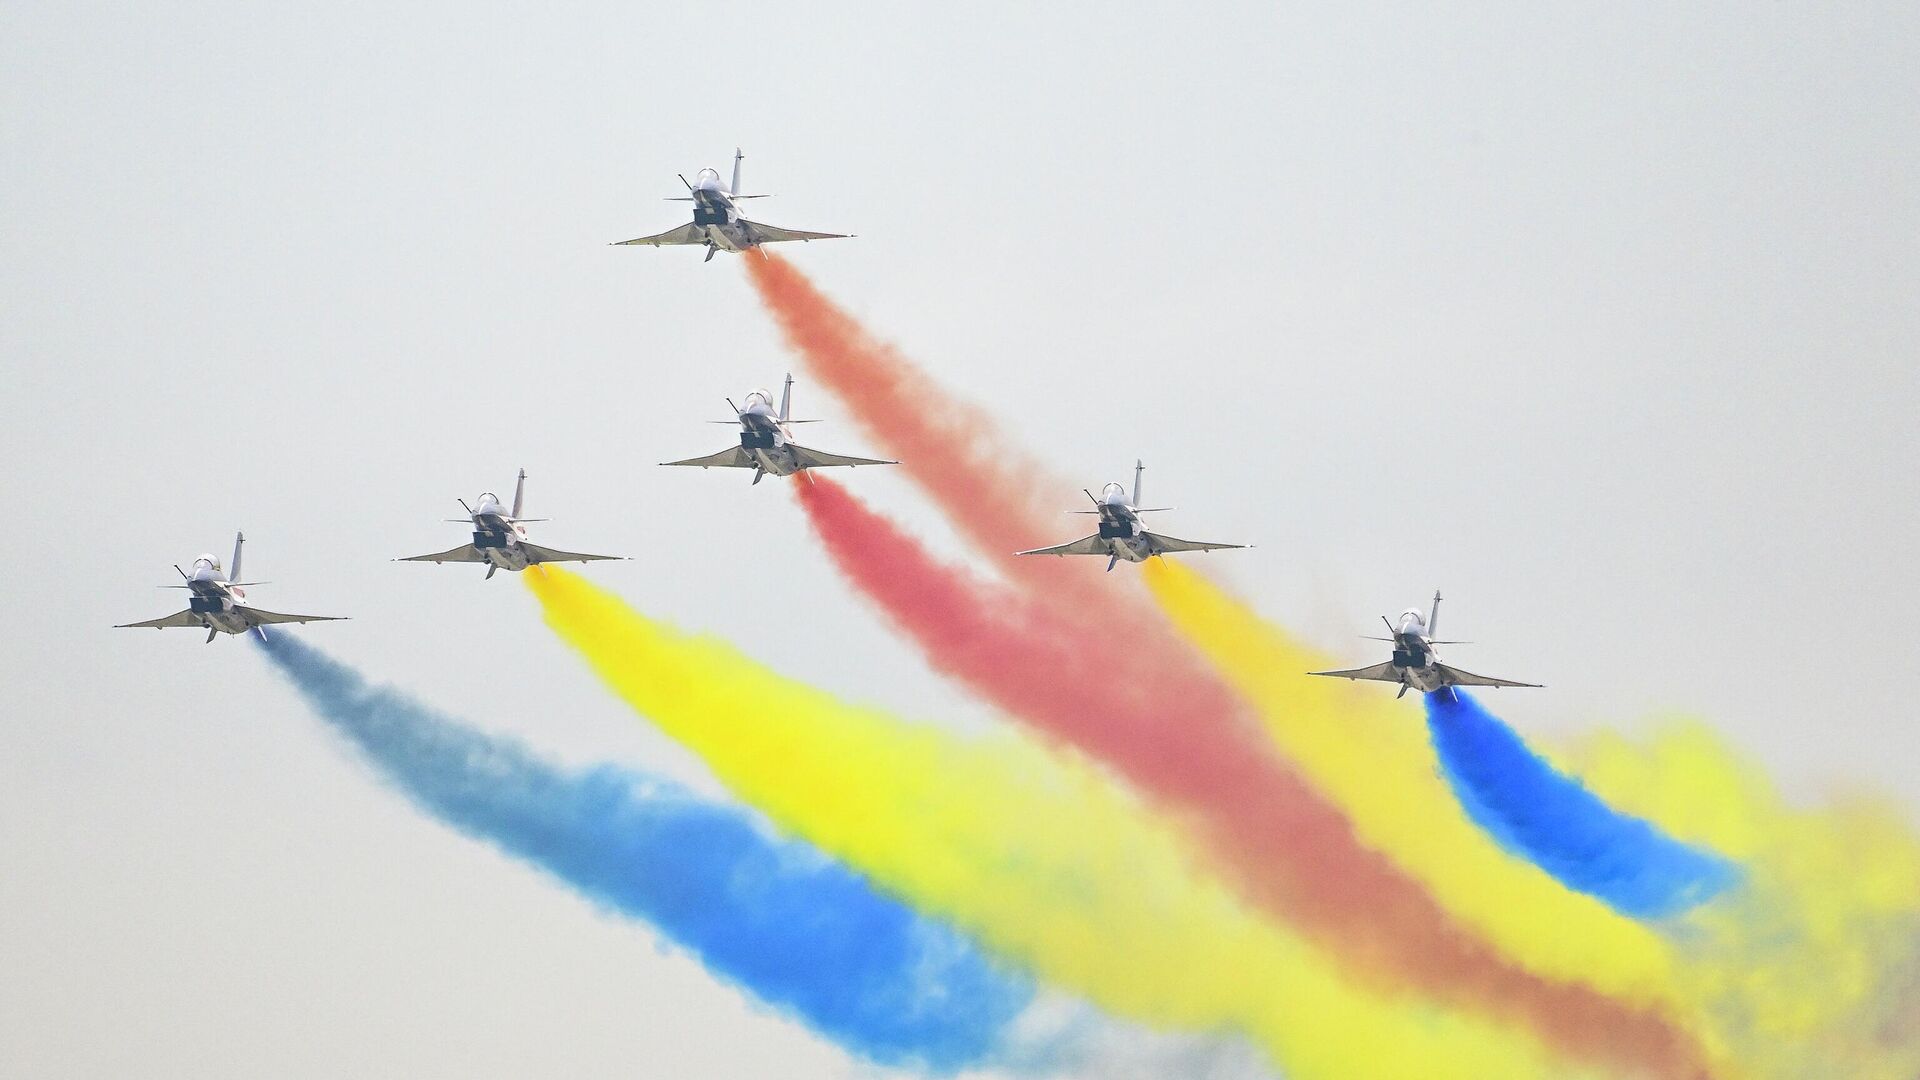 Пилотажная группа выступает на Airshow China 2022 в Чжухае - РИА Новости, 1920, 08.11.2022